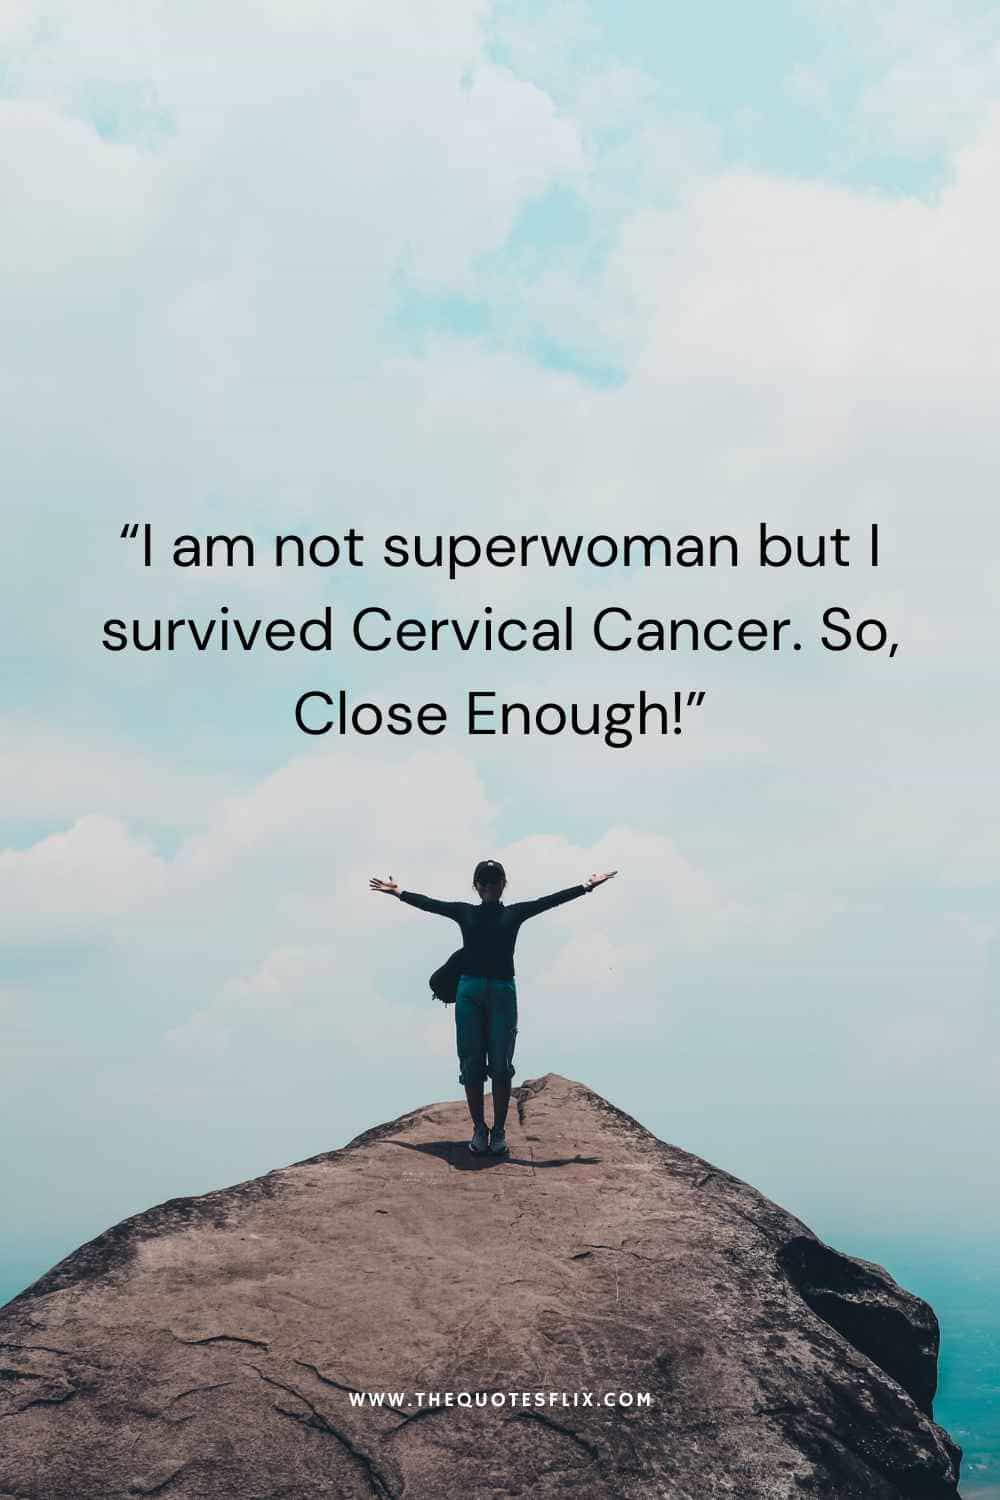 cervical cancer survivor quotes - i am not superwoman but i survived cervical cancer